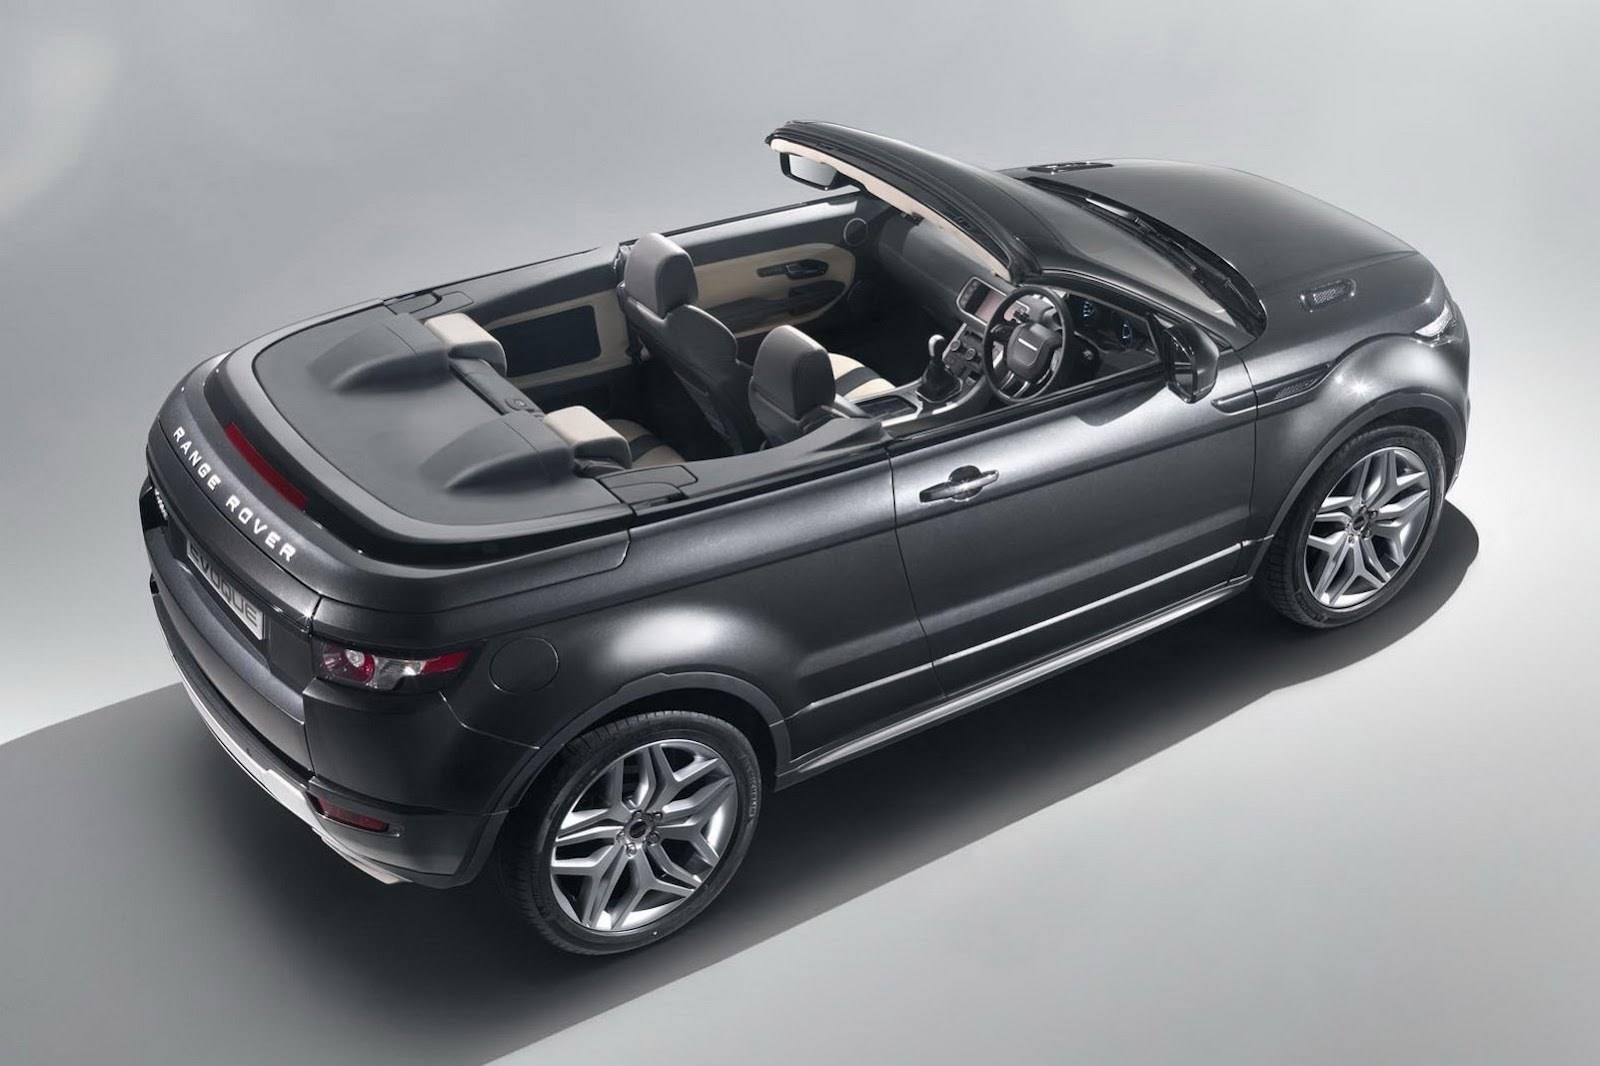 Range Rover Evoque ofera 4 locuri, iar acoperisul textul se retrage sub un capac in spate